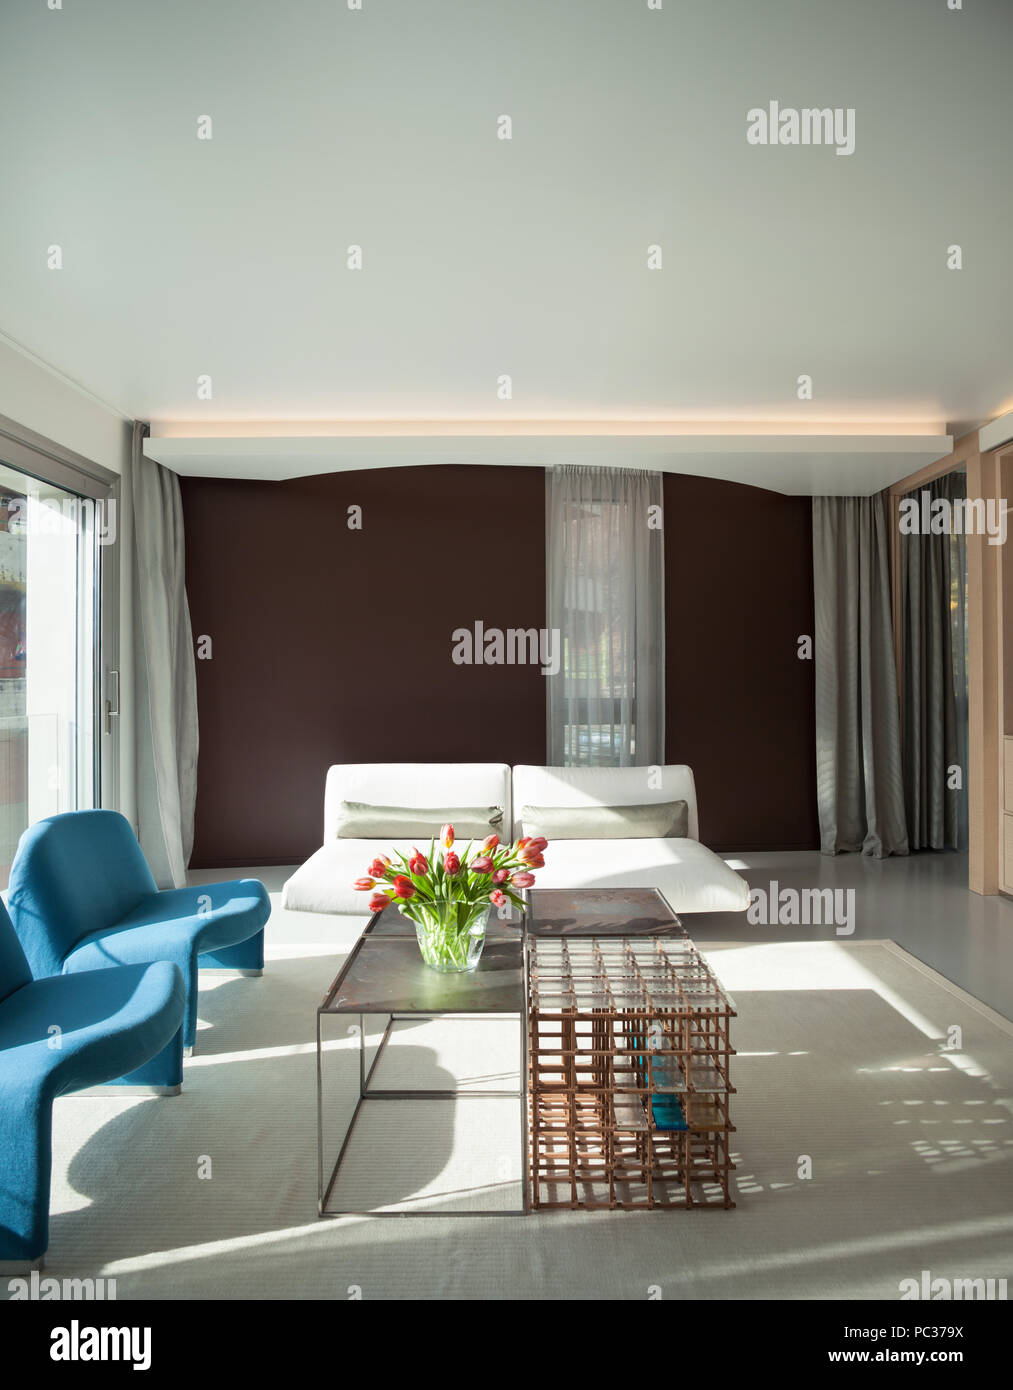 Appartamento di lusso, confortevole salotto con arredamento moderno Foto Stock